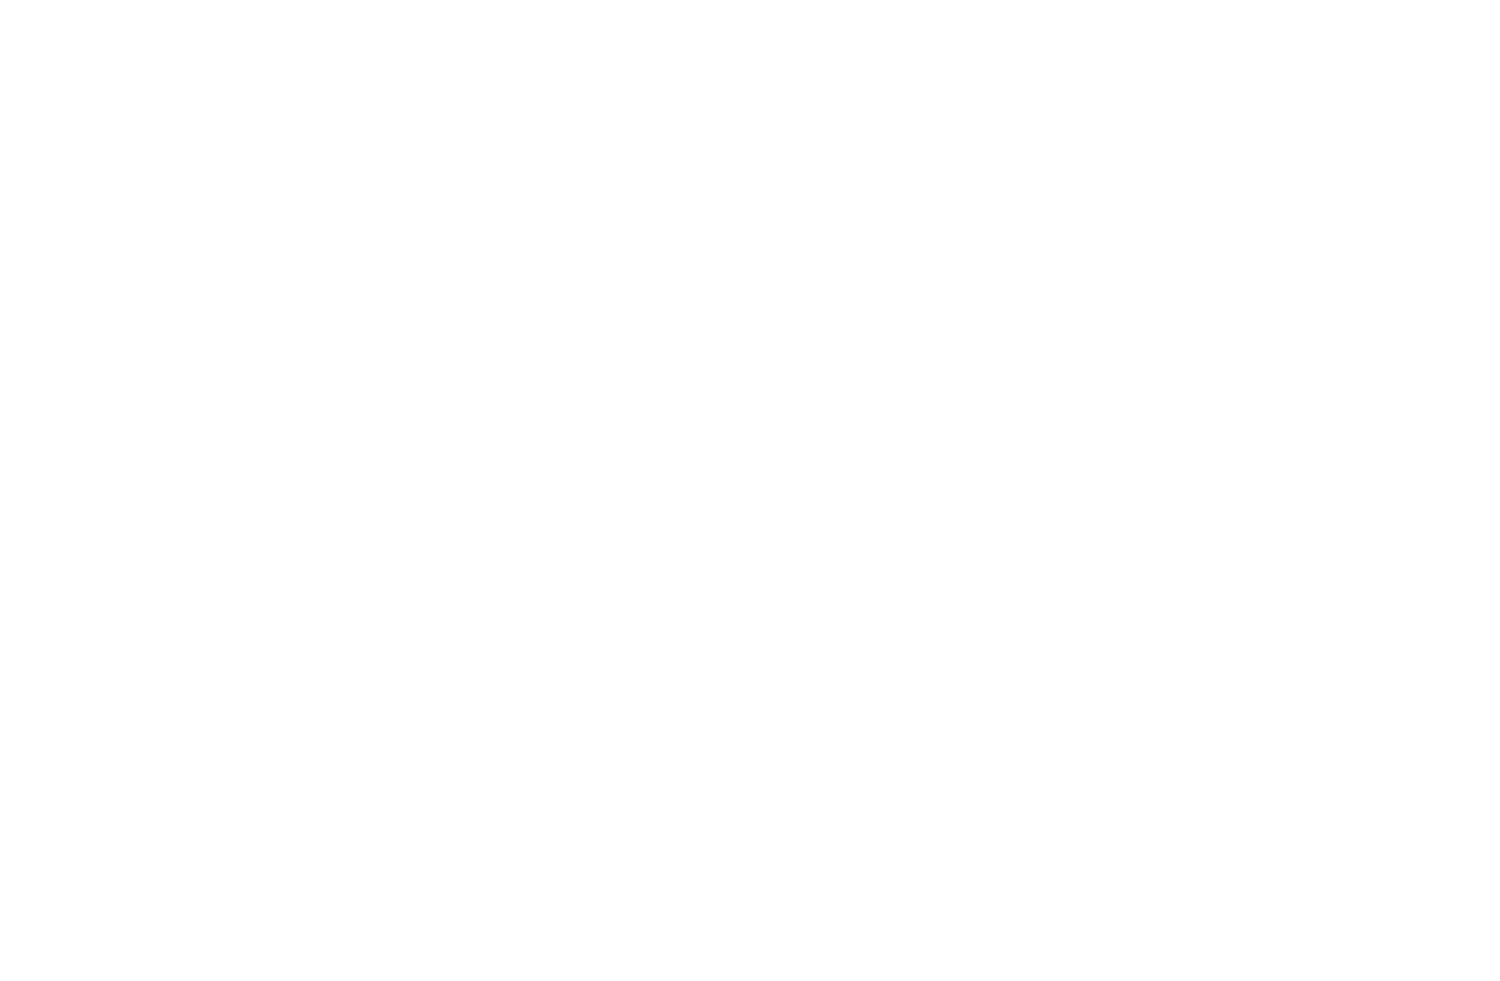 Orkney Parrots